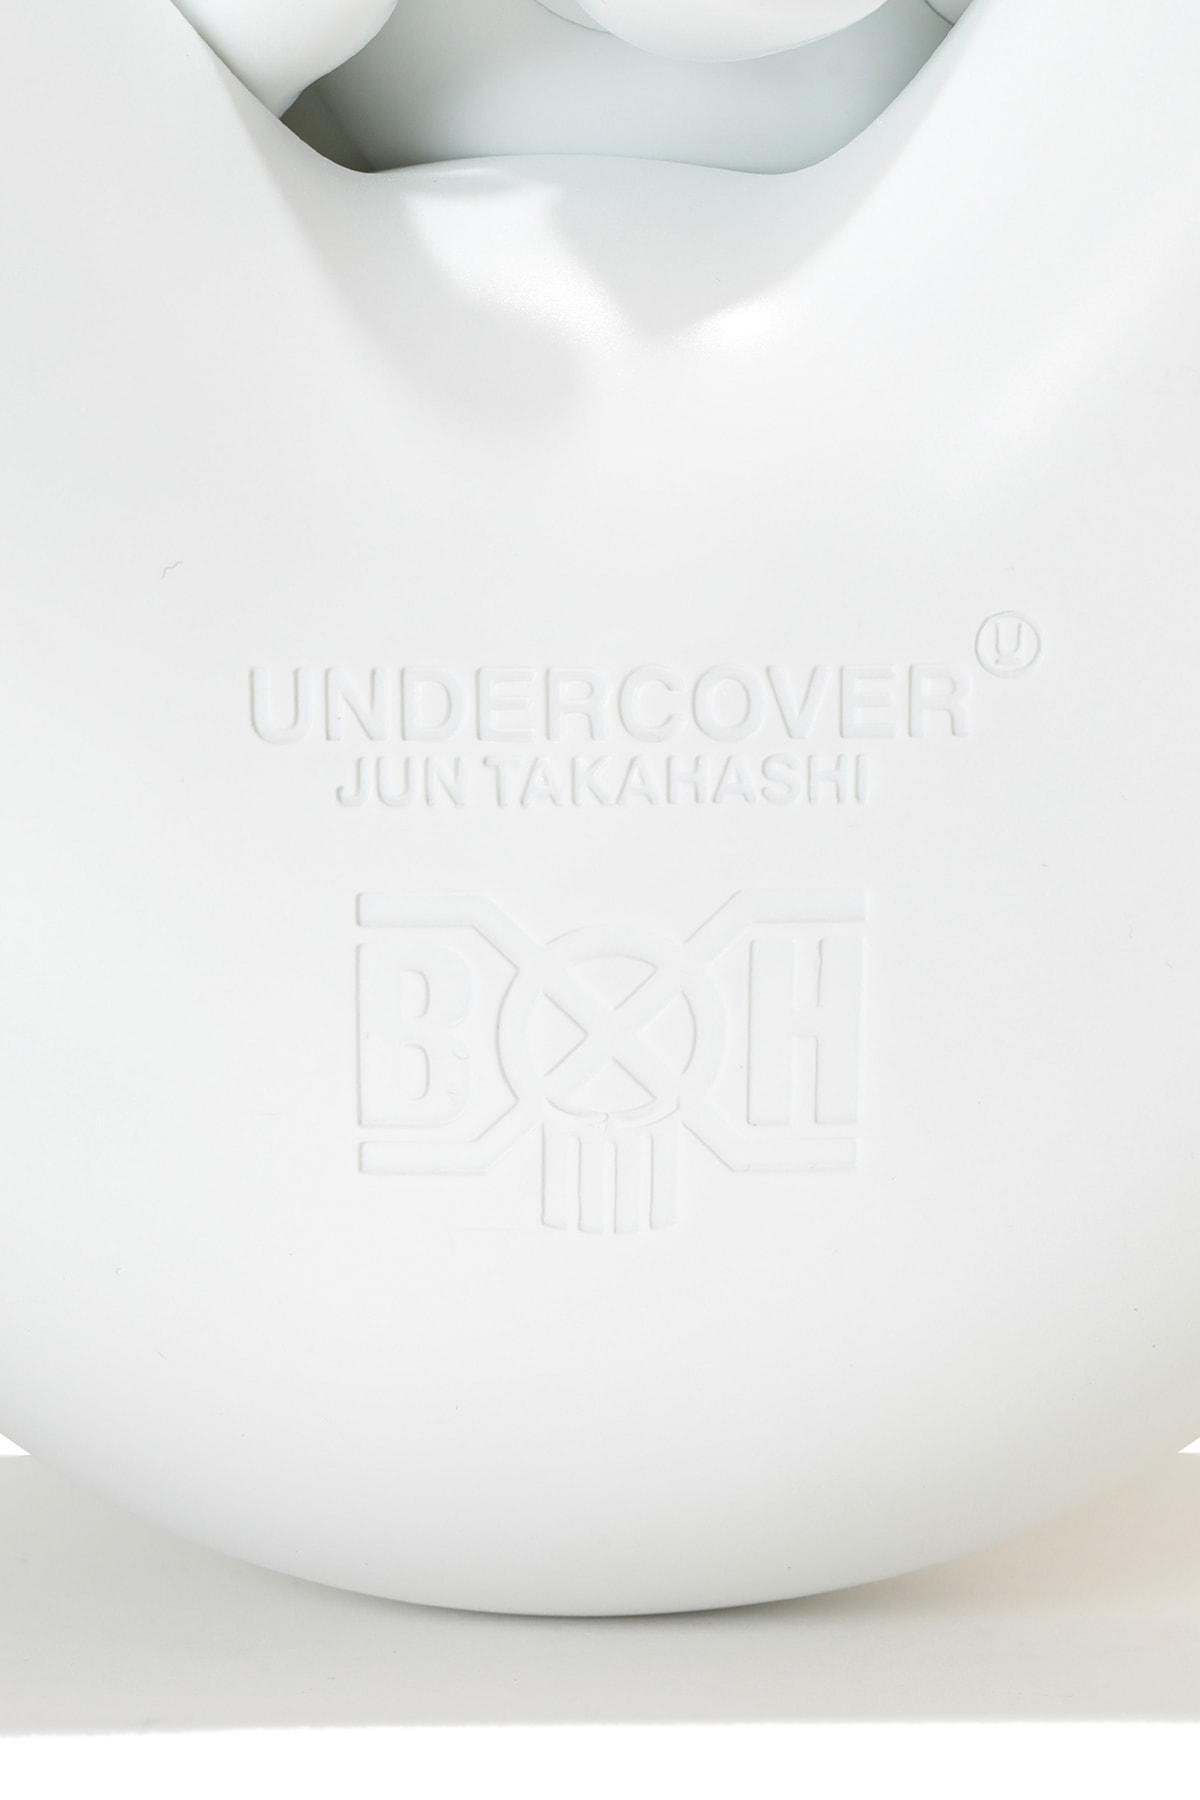 アンダーカバー x バウンティハンターによる最新コラボアイテムが発売 UNDERCOVER x BOUNTY HUNTER bear skull-kun release info